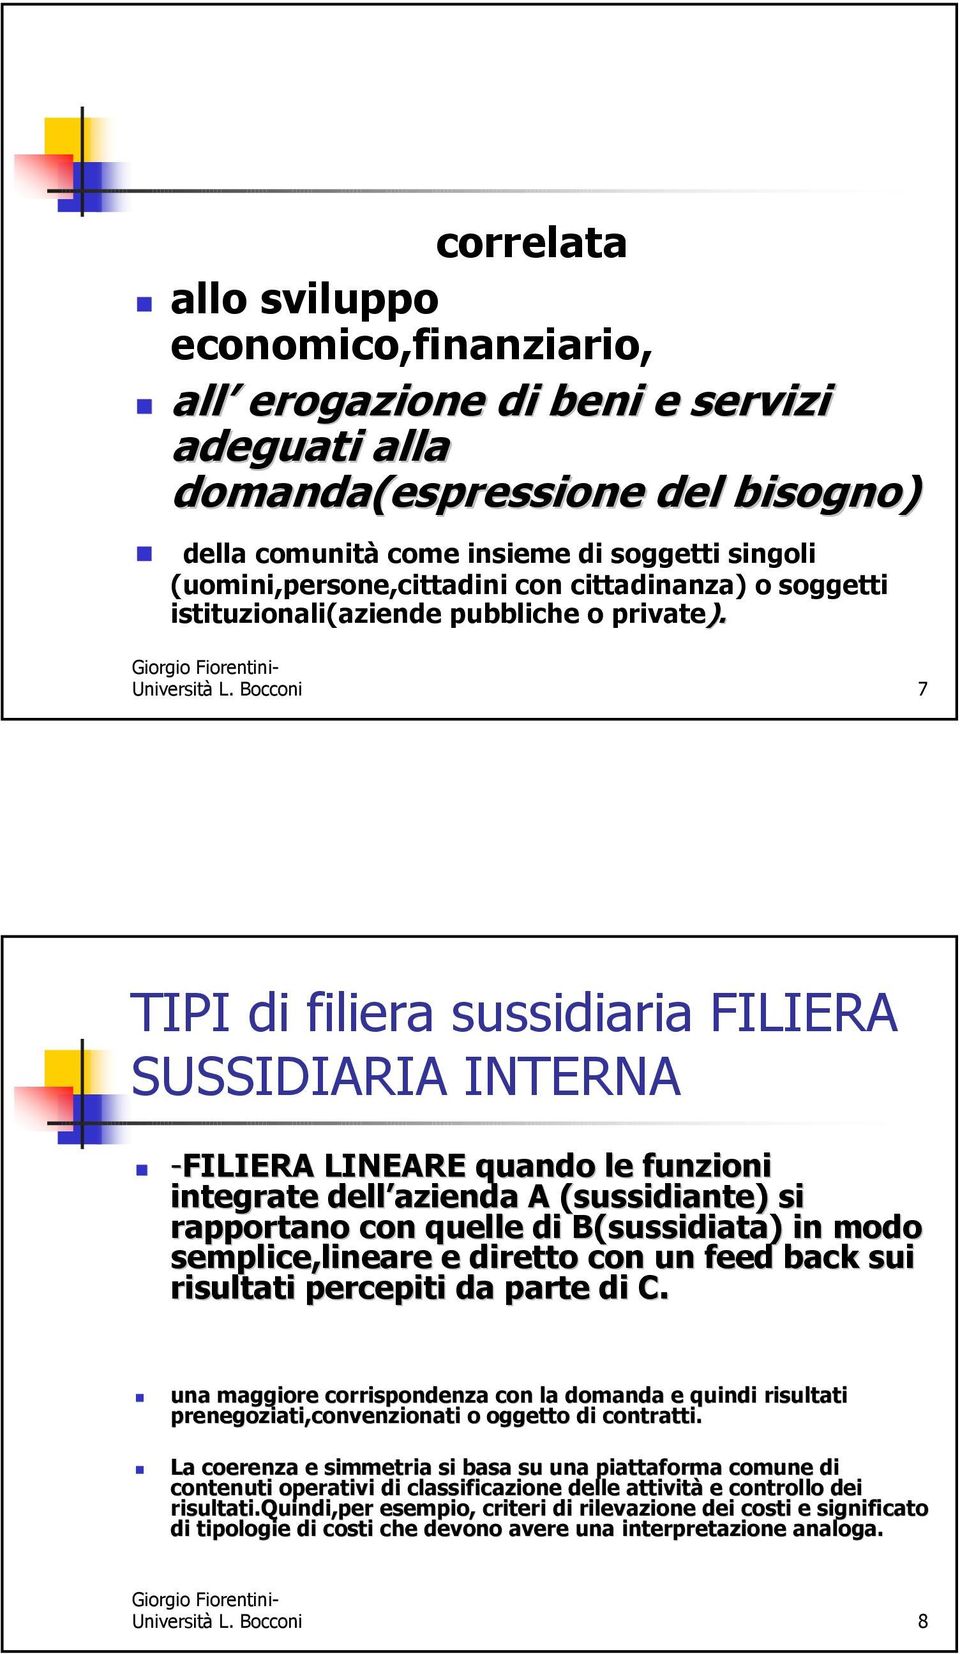 Bocconi 7 TIPI di filiera sussidiaria FILIERA SUSSIDIARIA INTERNA -FILIERA LINEARE quando le funzioni integrate dell azienda A (sussidiante) si rapportano con quelle di B(sussidiata) in modo